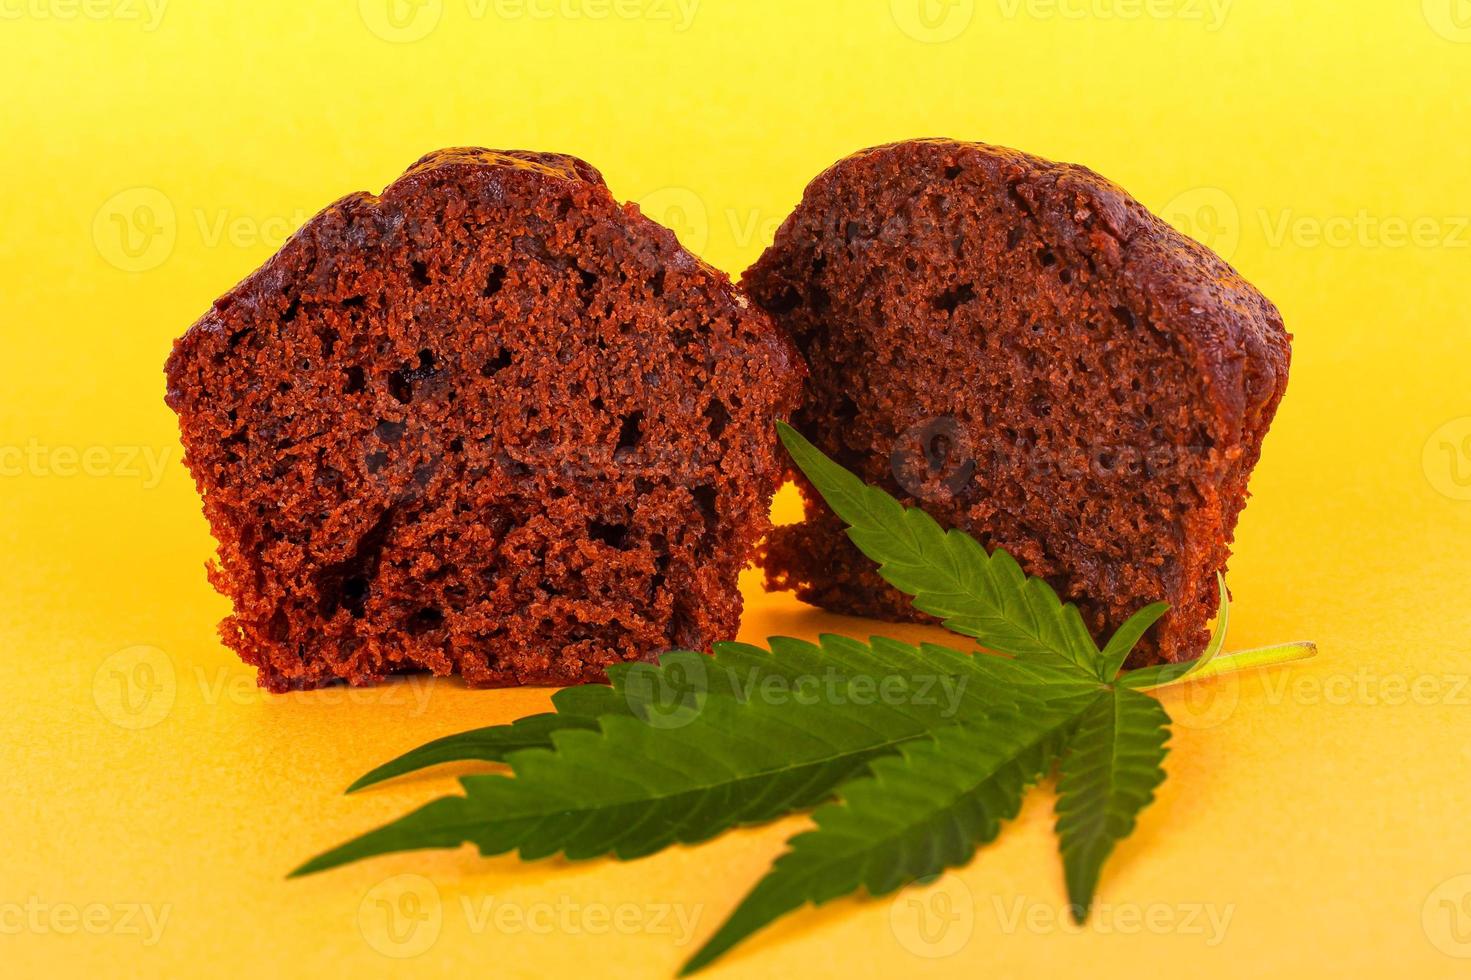 Chocolate muffin cake with marijuana on yellow background photo